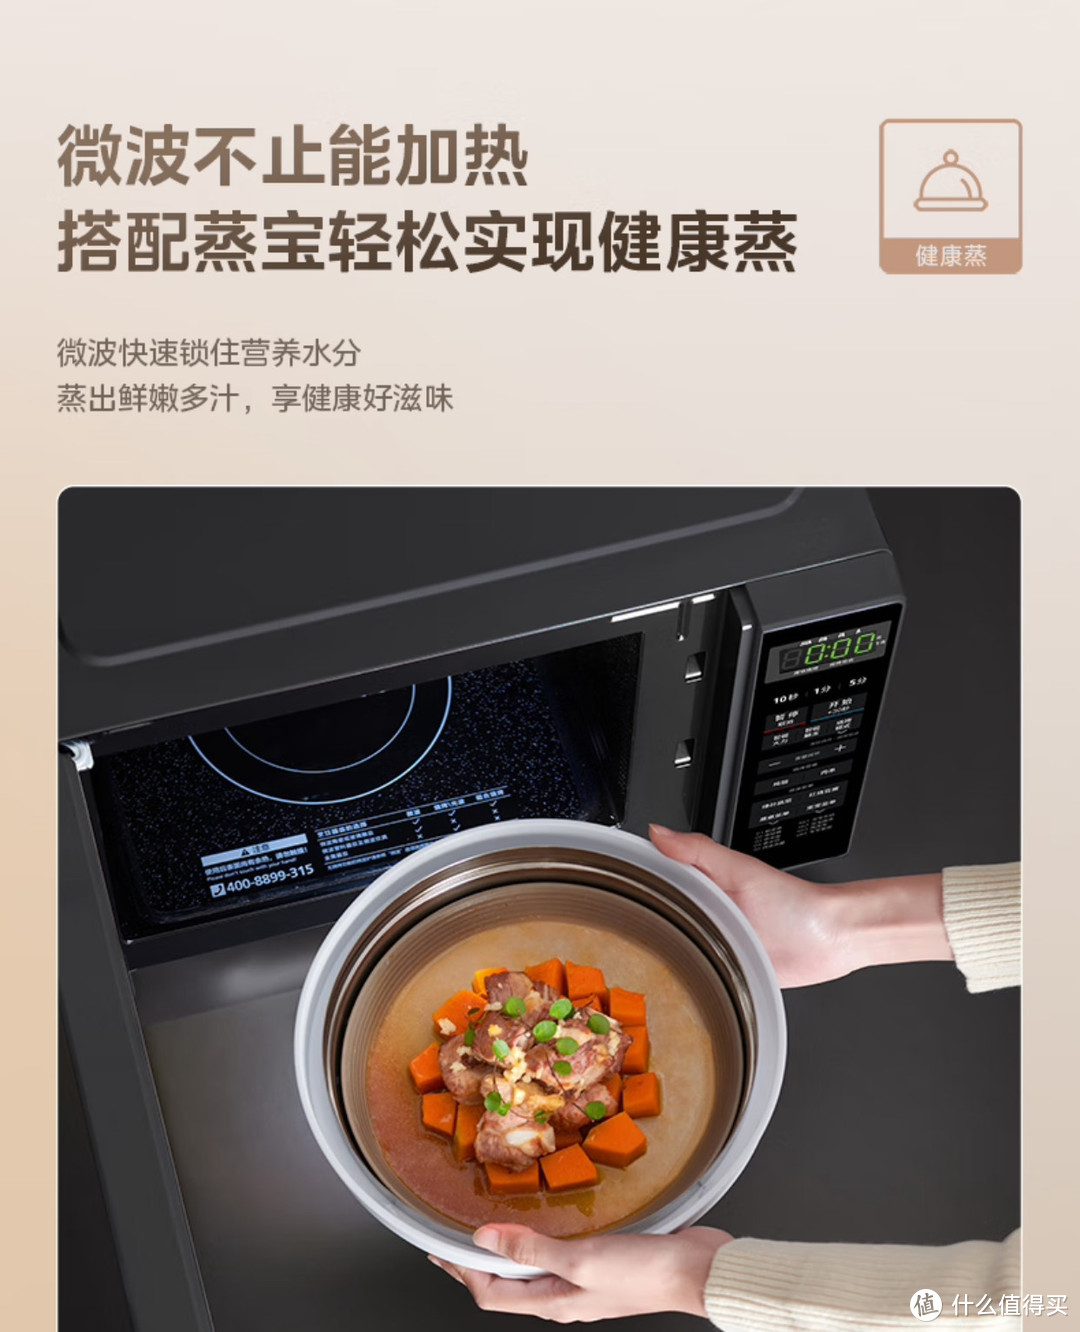 家里有个微波炉可太方便了吧，煎炒烹炸样样可以，热菜热饭太省心了。